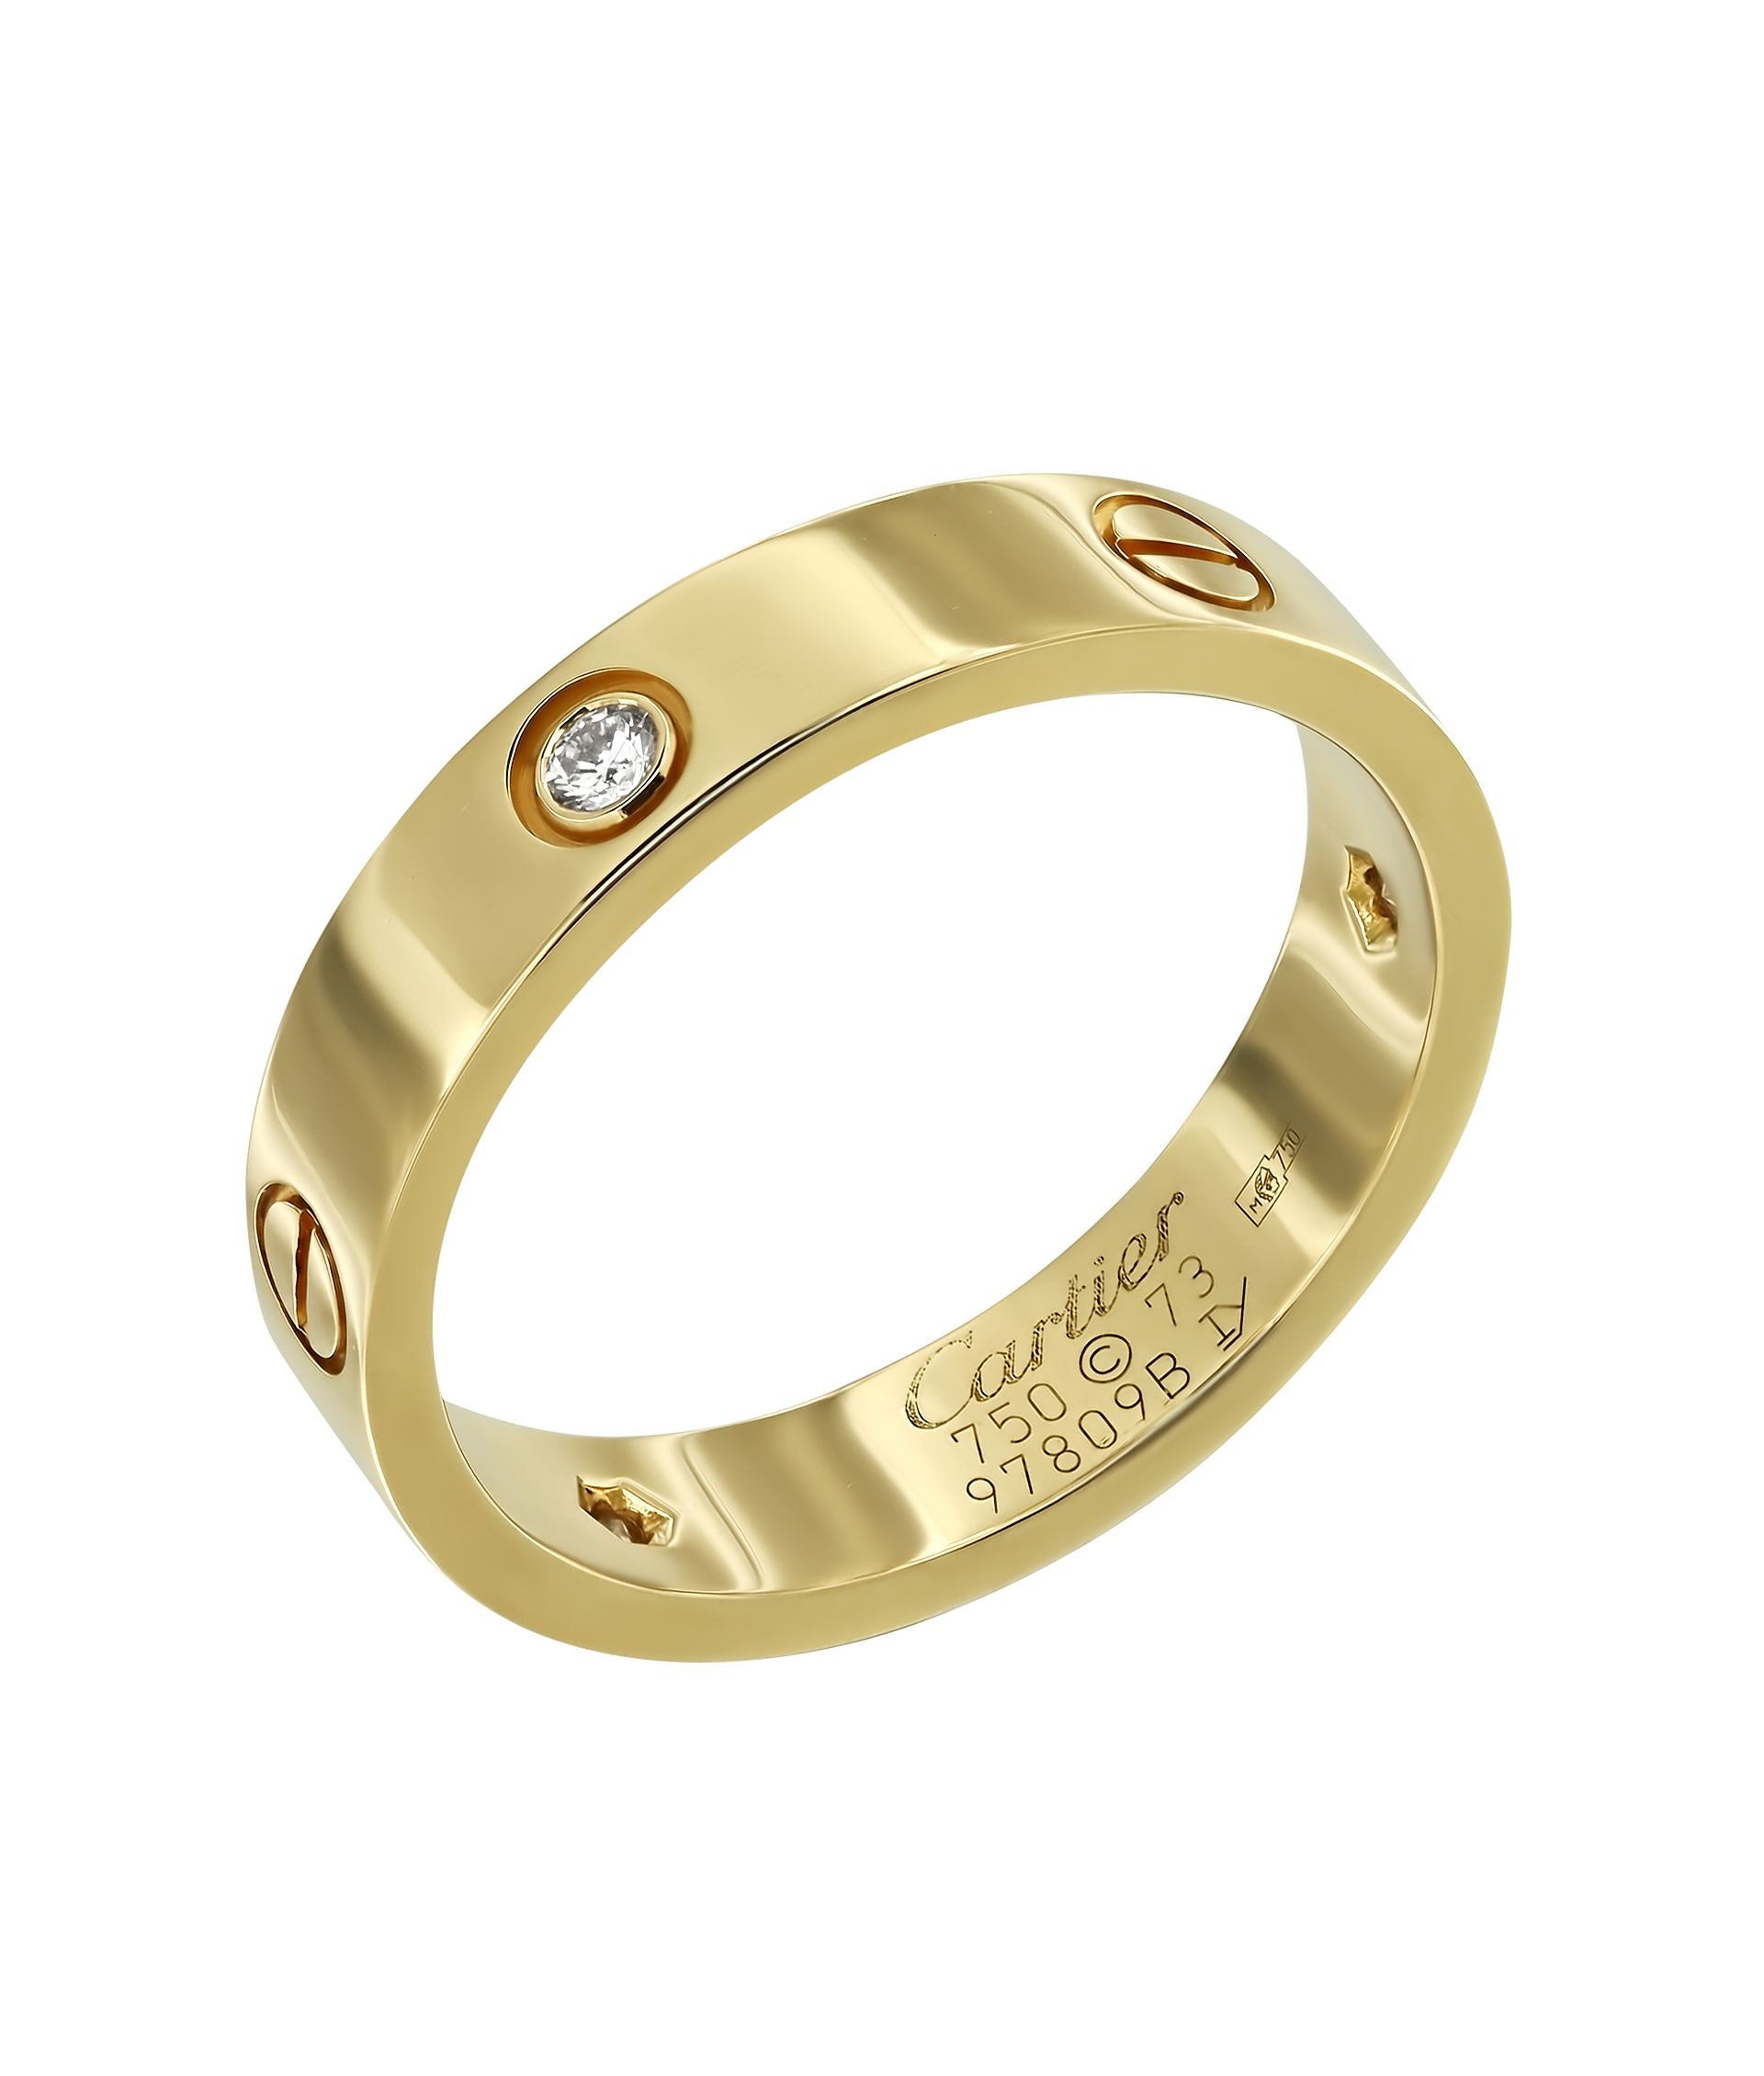 Кольцо Love Cartier из желтого золота 750 пробы с бриллиантами 8164 - купить сегодня за 124242 руб. Интернет ломбард «Тик – Так» в Москве